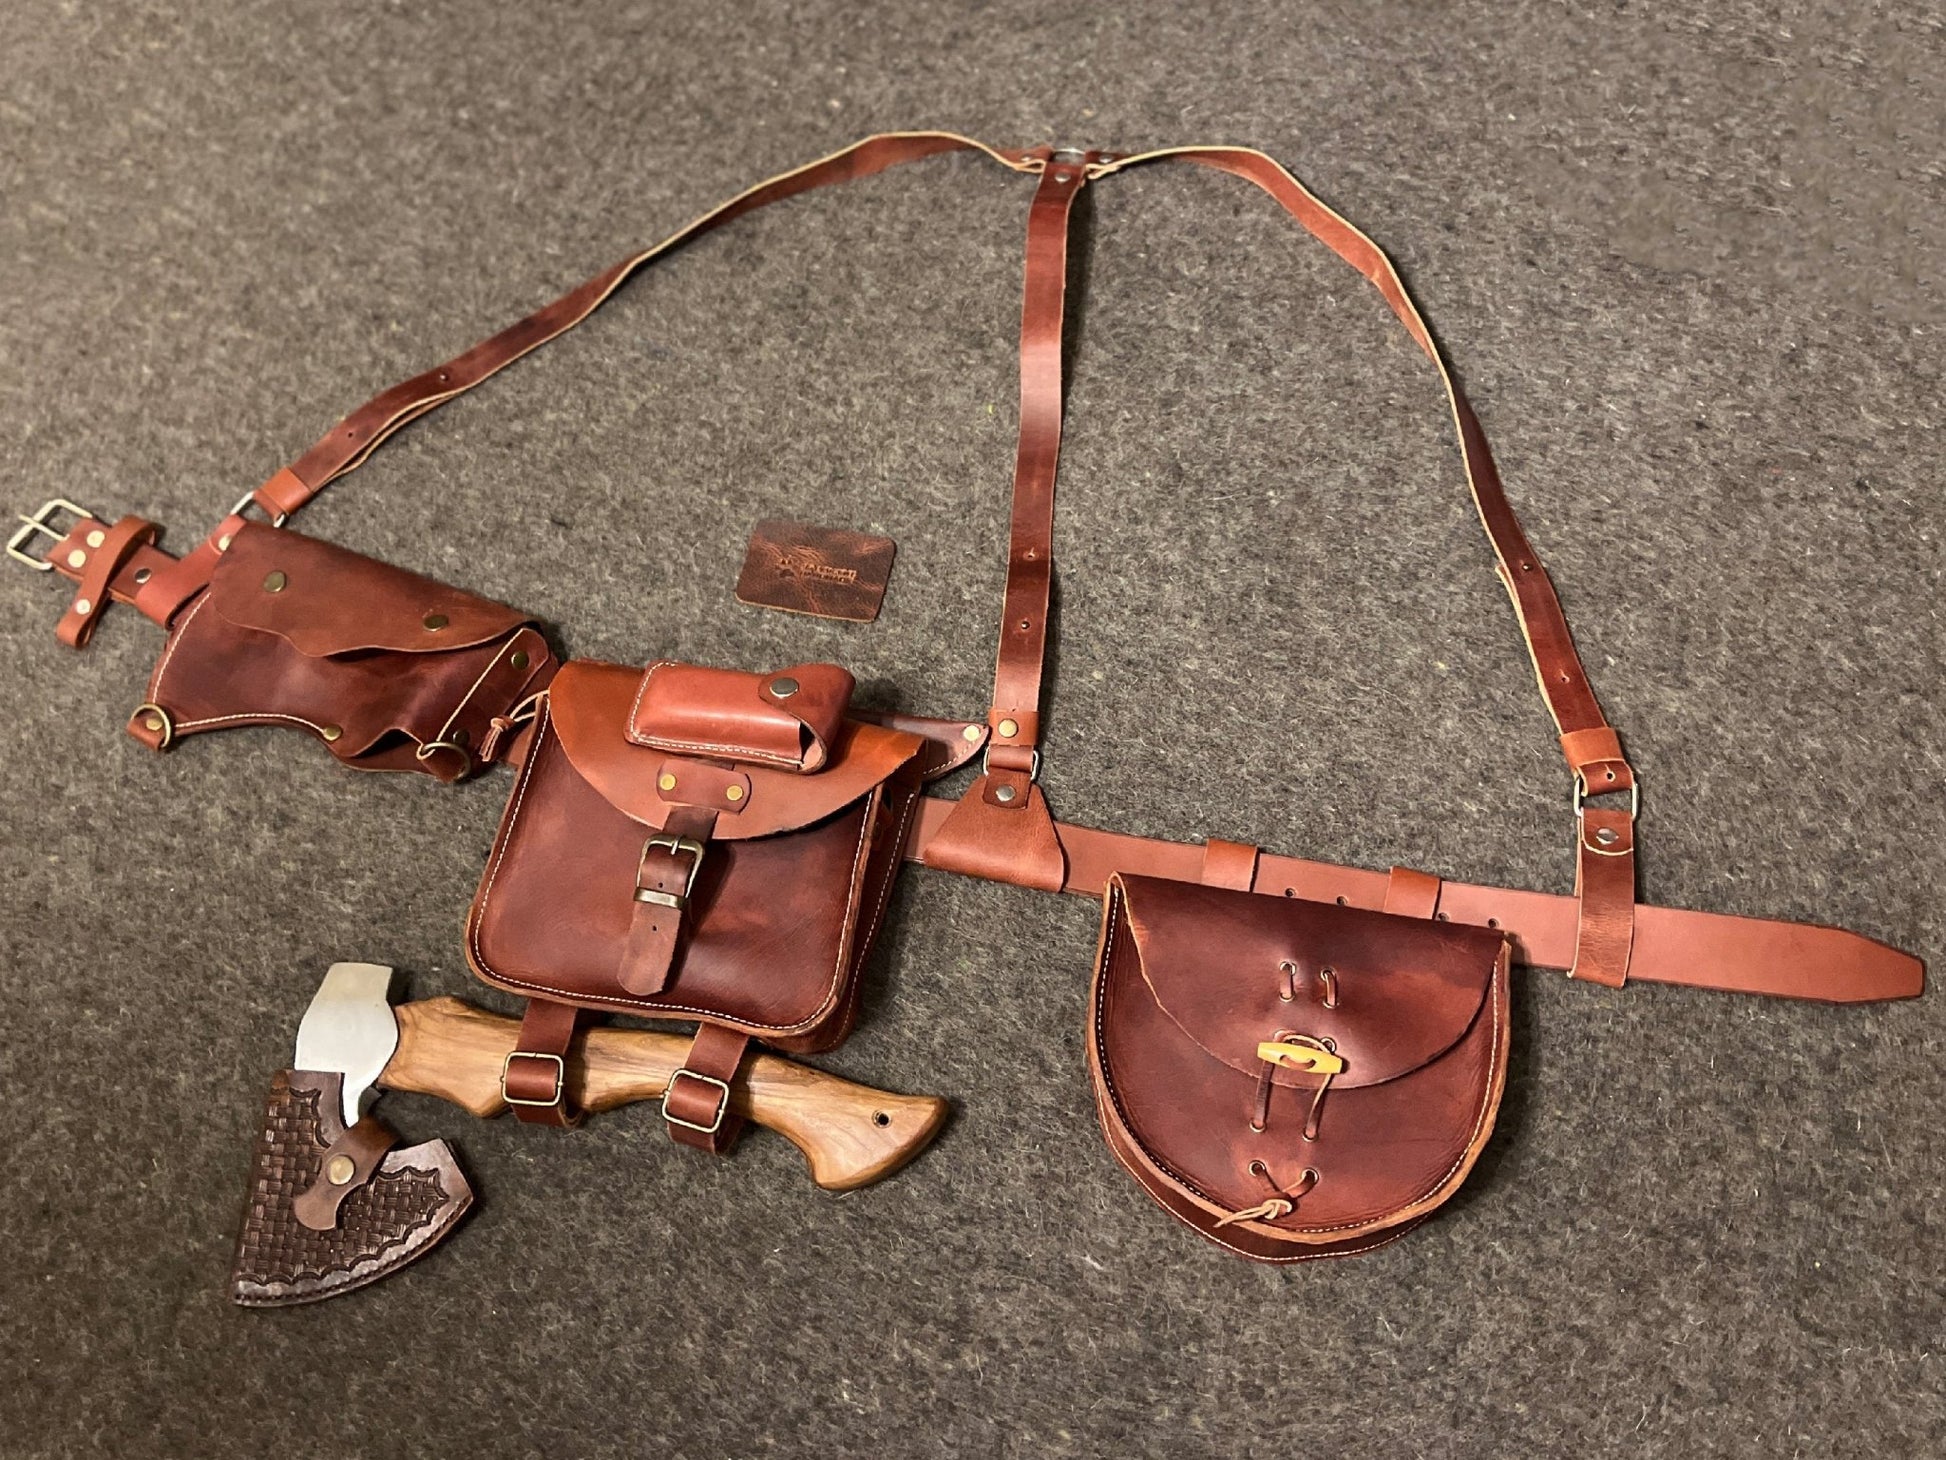 For Stephen - Bushcraft Belt Suspender Kit With Personalization, Load Carrying Bushcraft Belt,  Foraging Bag,  Axe Holder, Belt Bag  99percenthandmade   